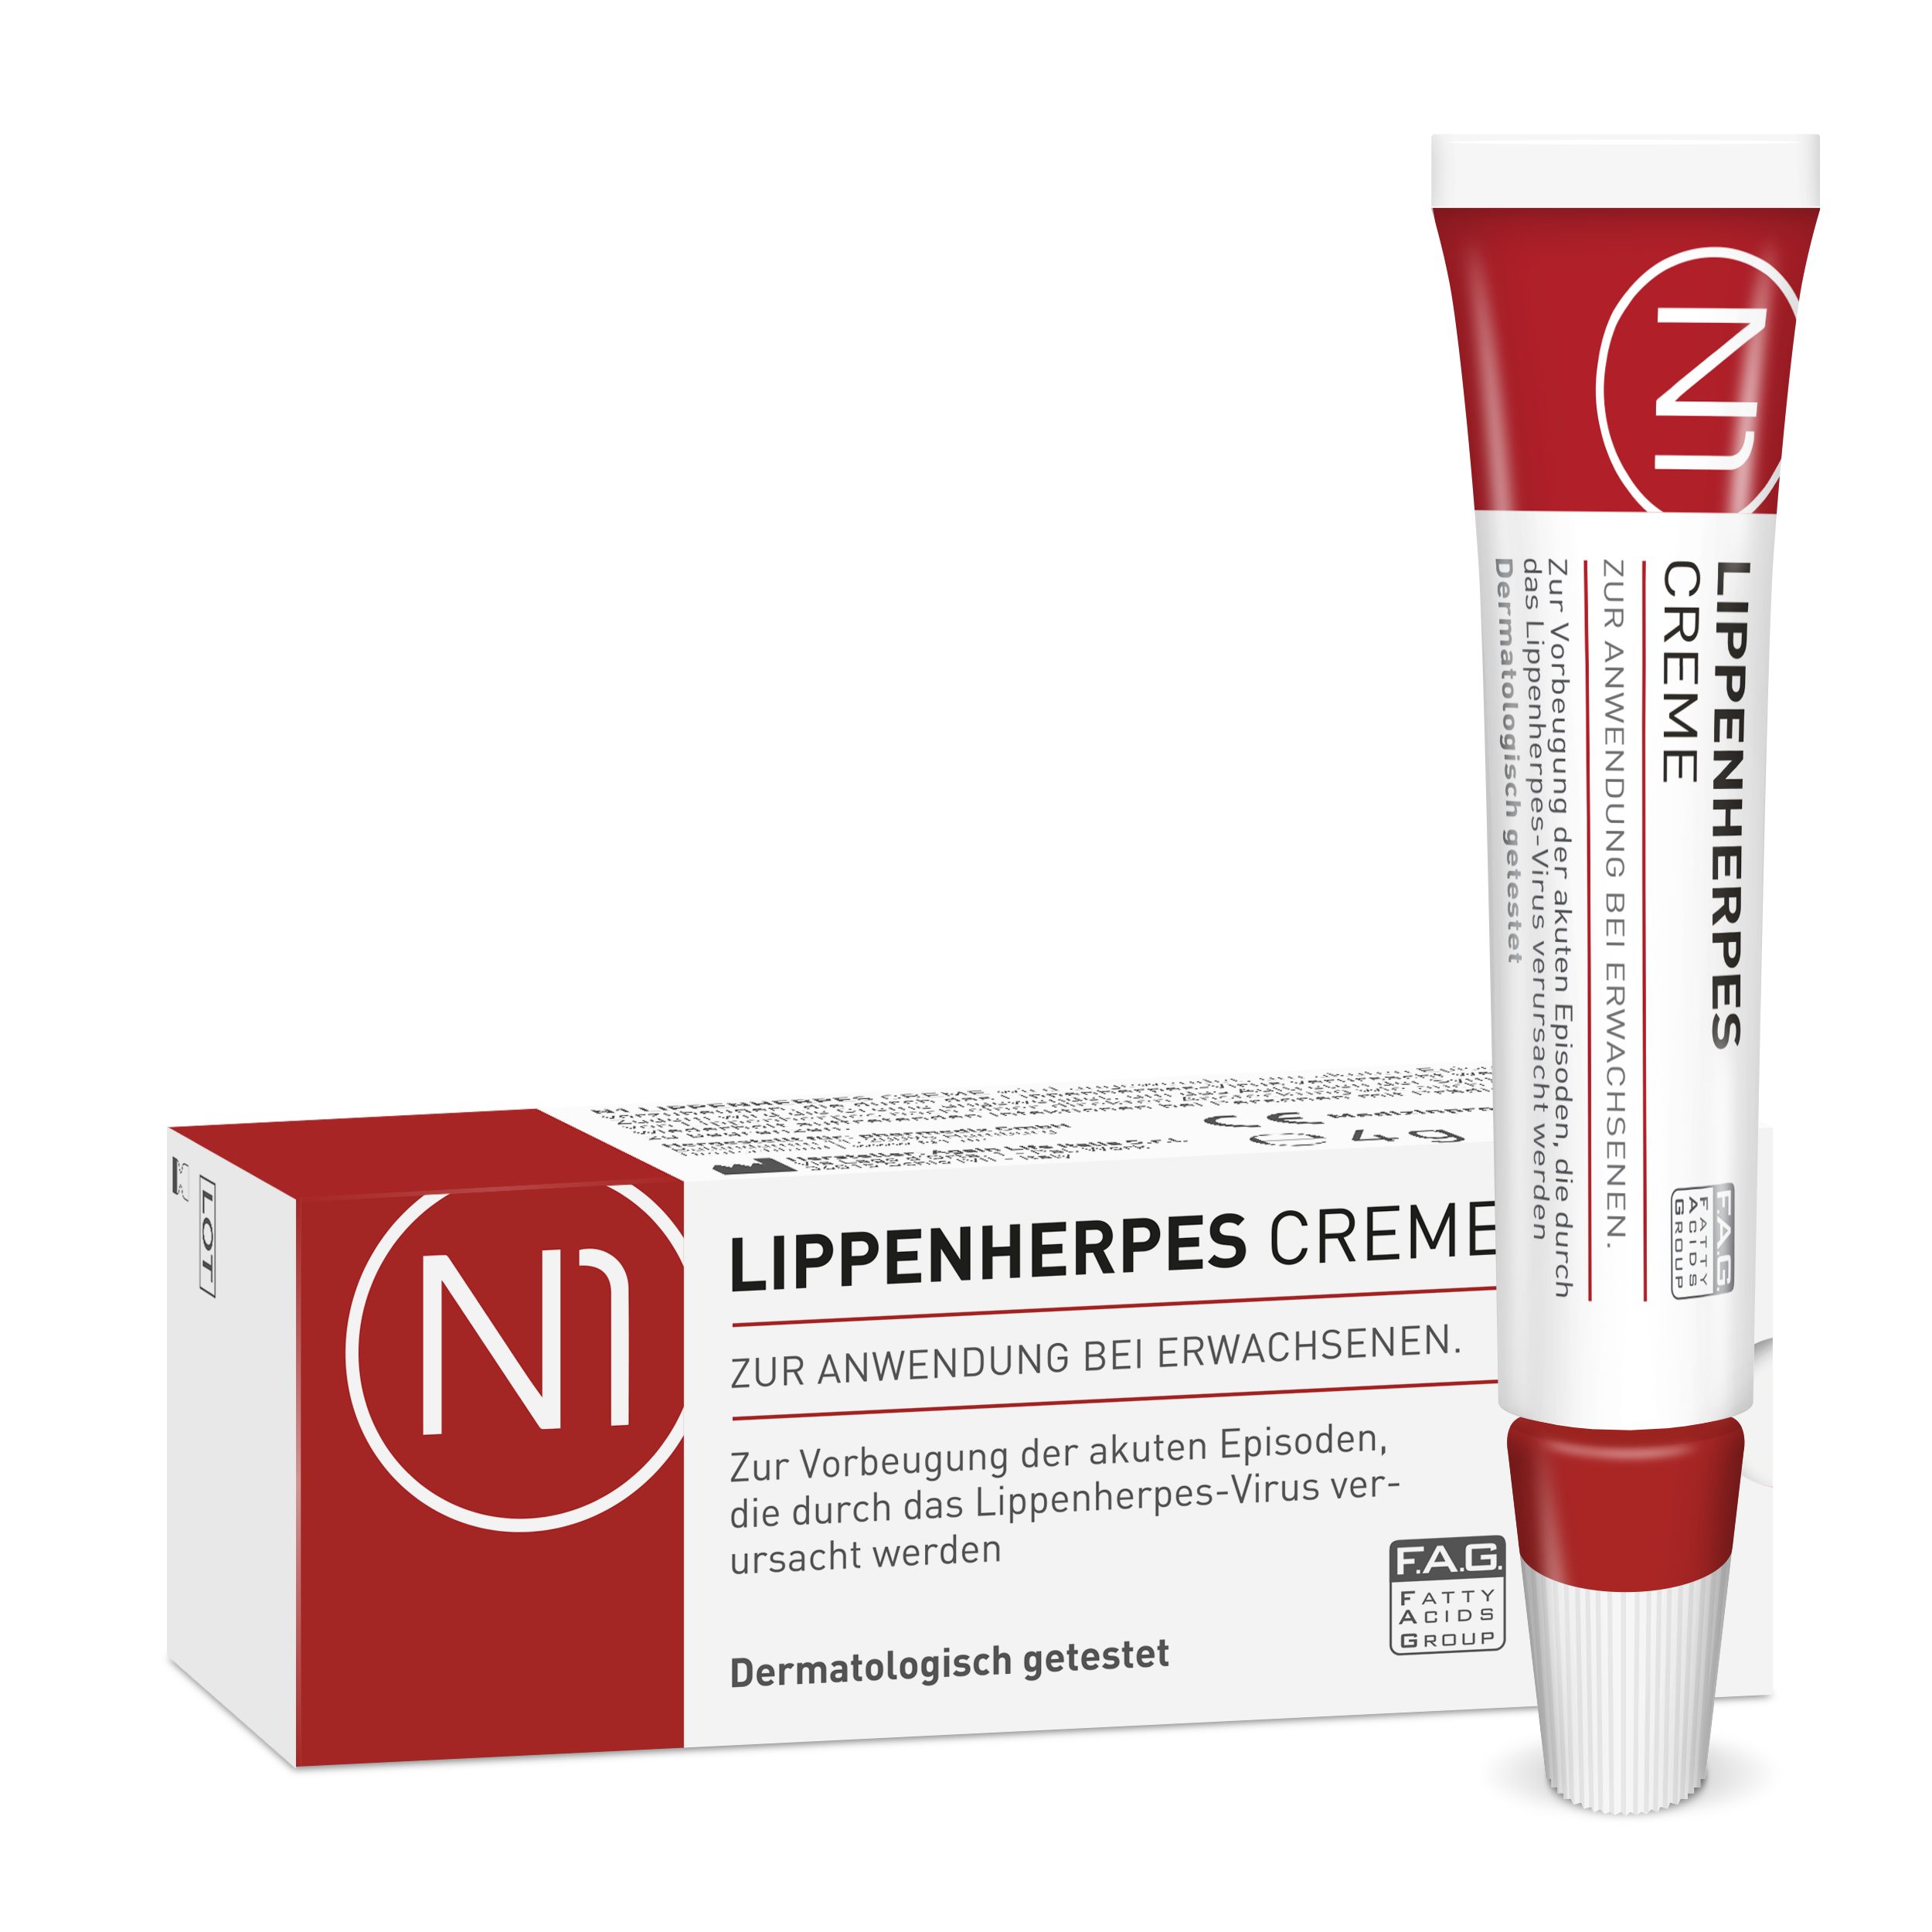 Lippencreme N1 geöffnet bei Monate haltbar Lippenherpes, Healthcare Creme sofort, 6 Herpes patentiert, wirkt